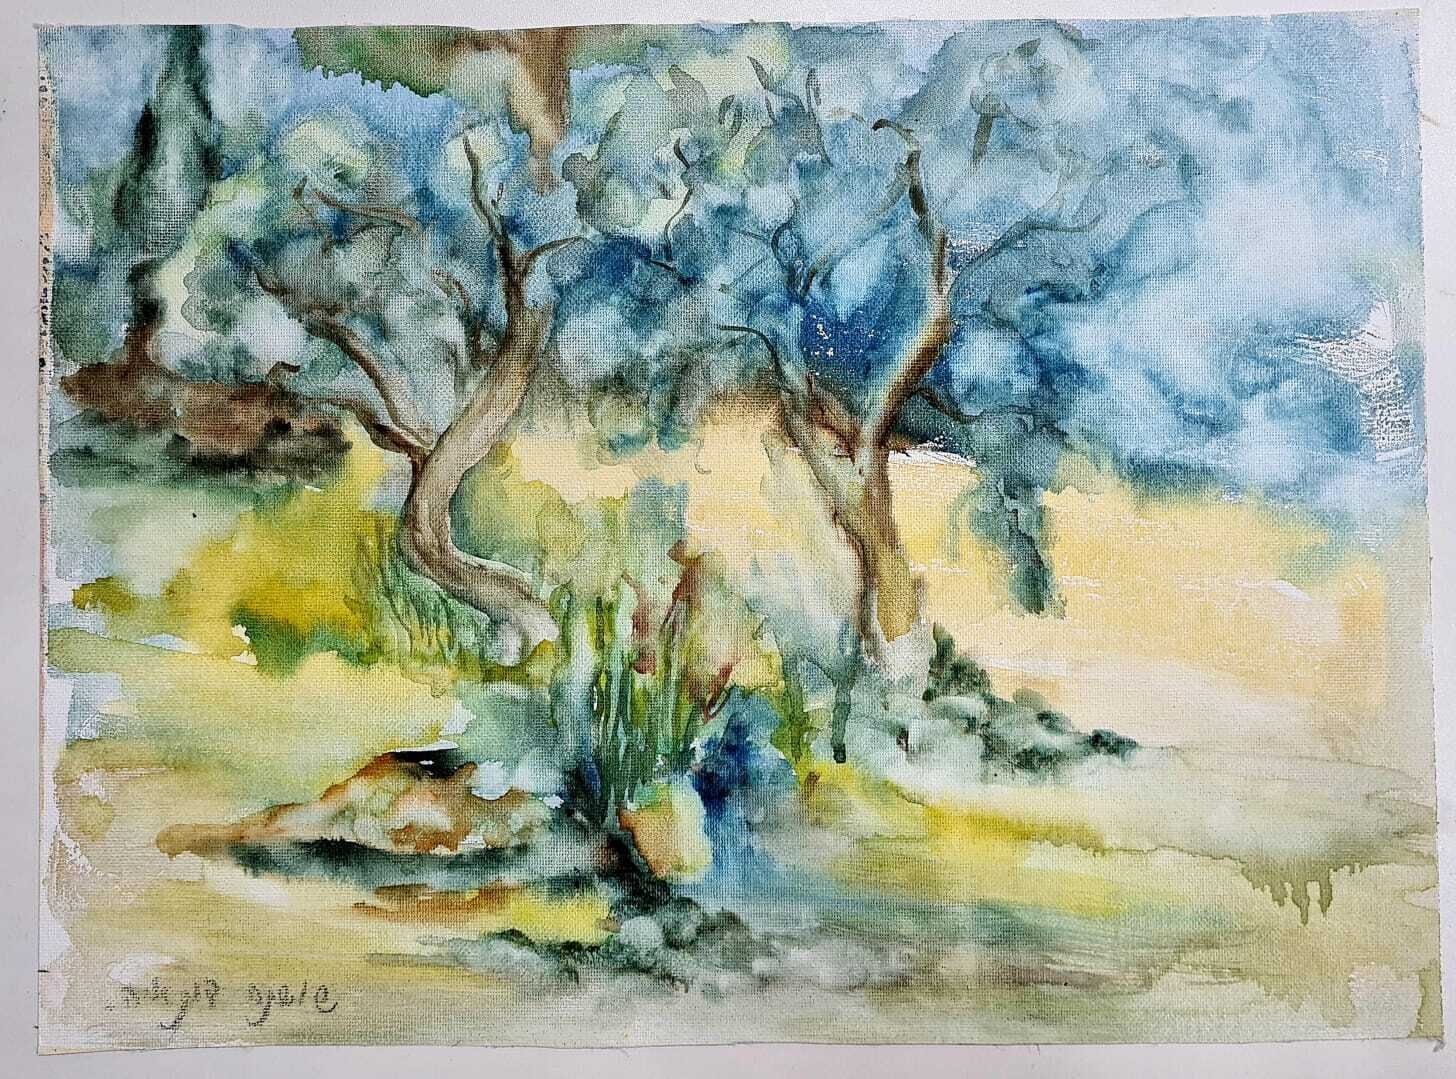 ציור מס. 51 - "עצי זית"